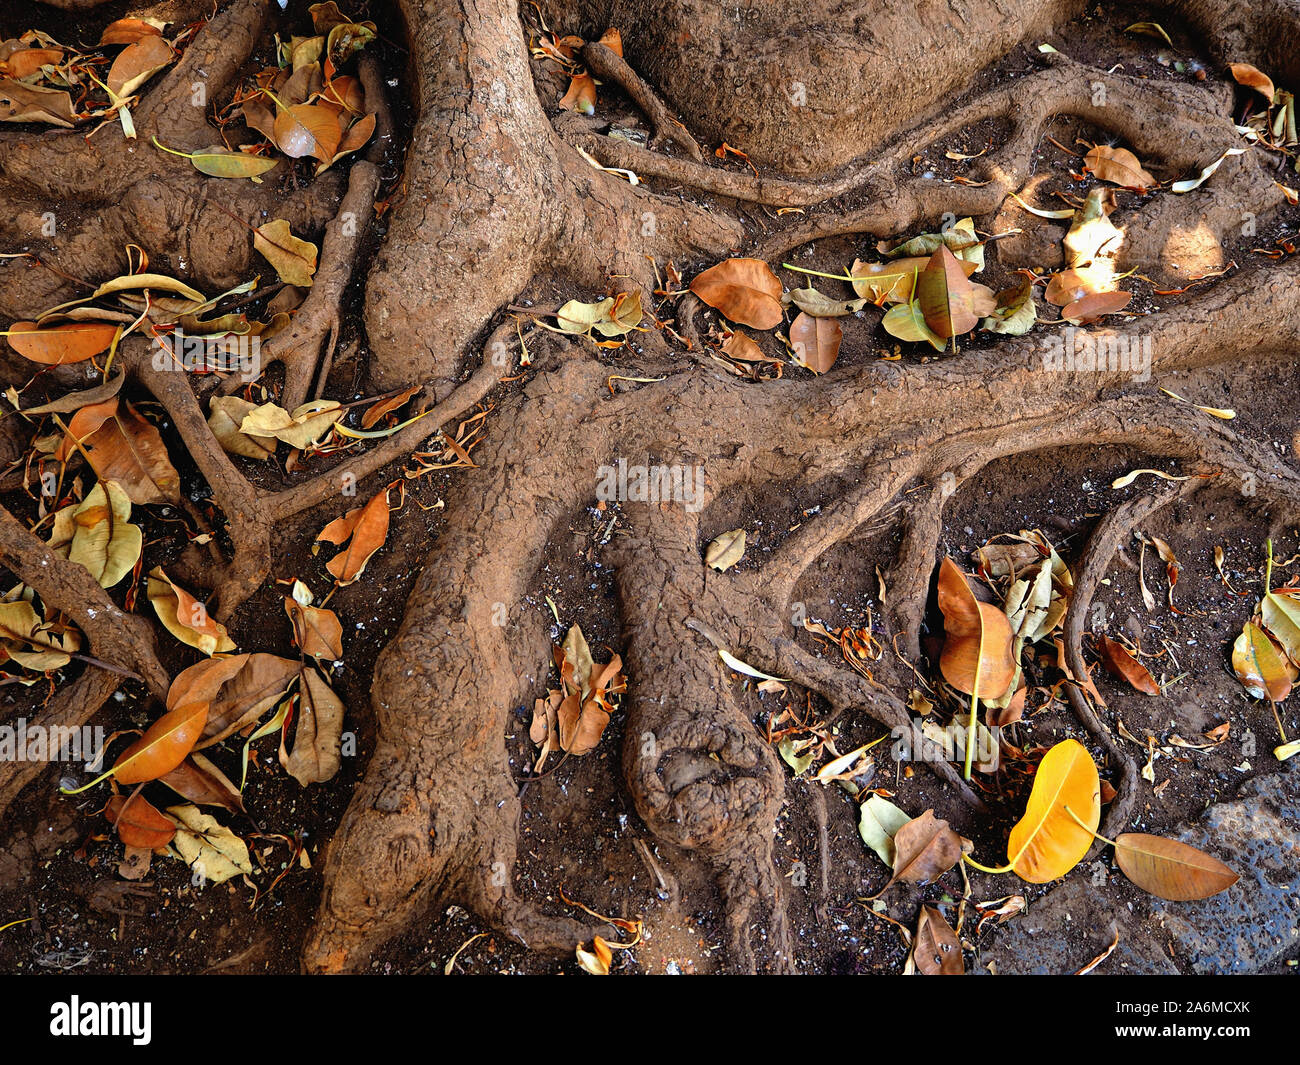 Le radici spesse di una gomma canario tree fotografato dal di sopra con il giallo di foglie essiccate che giace intorno a loro. Immagine dettagliata nei toni della terra. Foto Stock